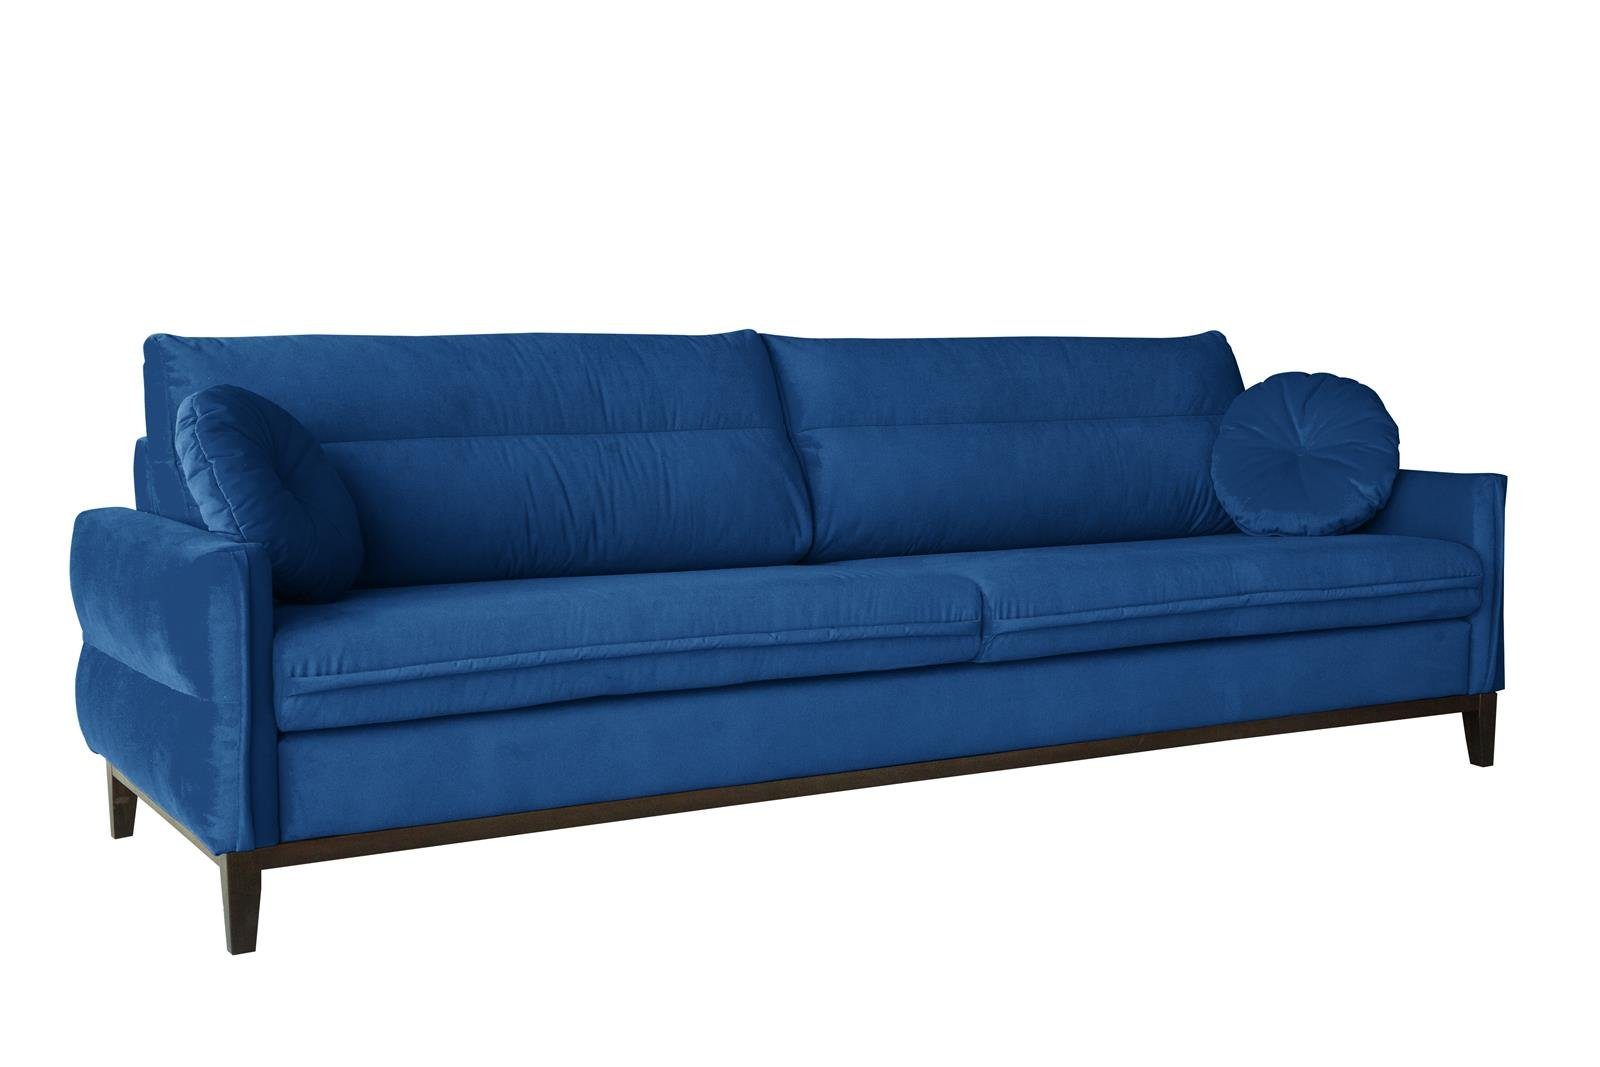 Beautysofa Sofa Belweder, 268 cm breite, Polstercouch für Wohnzimmer, 3-Sitzer Sofa aus Velourstoff, Dreisitzer im skandinavisches Stil Marineblau (kronos 09)